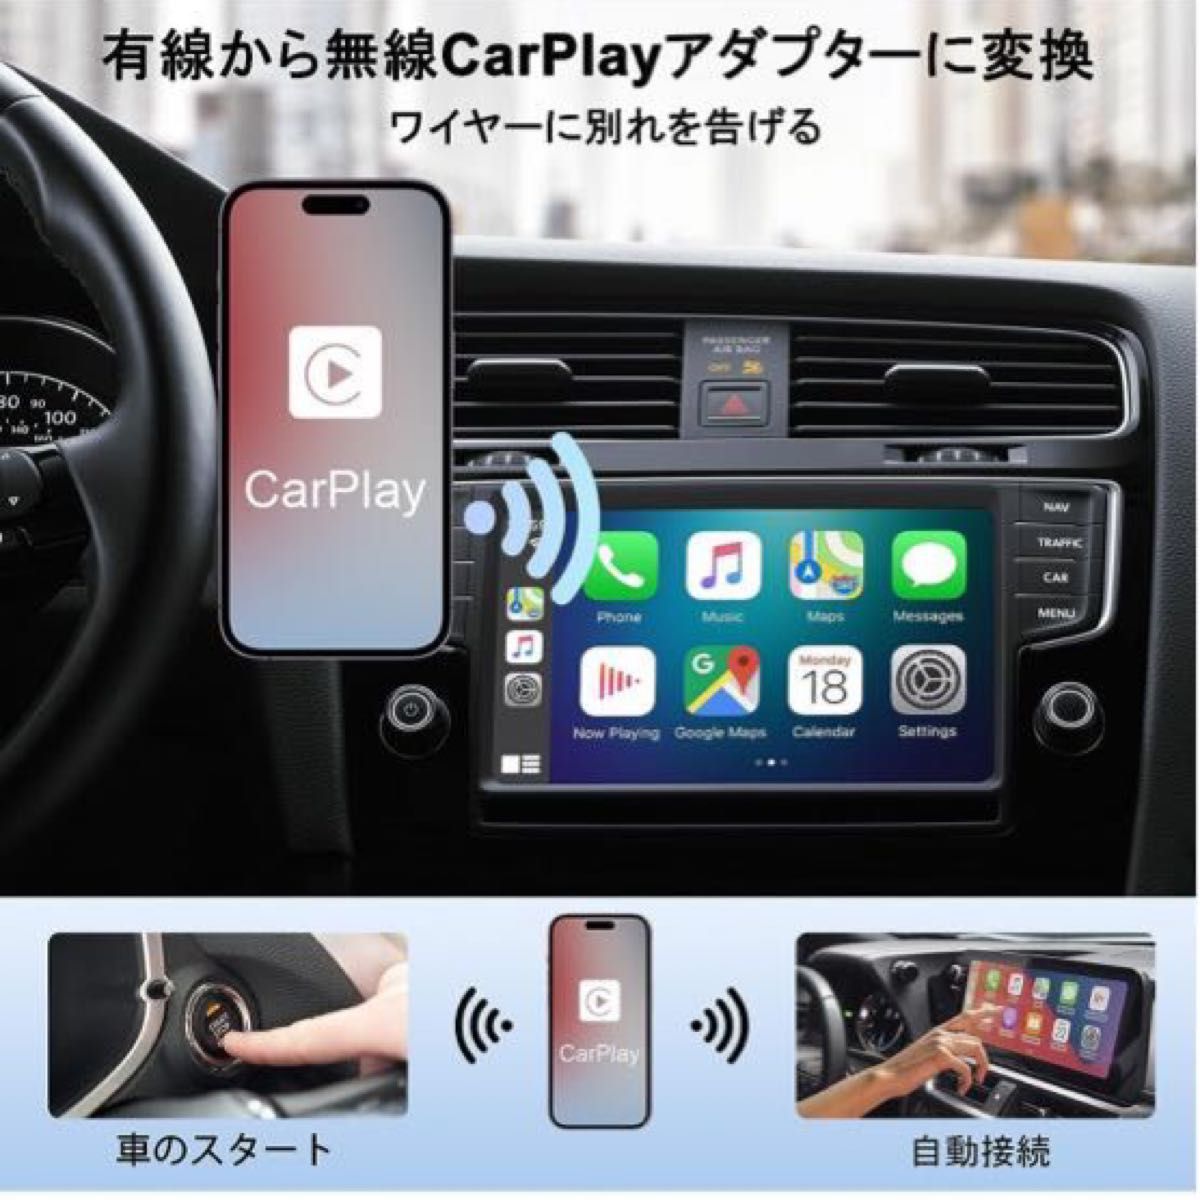 ワイヤレス CarPlay アダプター無線化 カープレイwirelessアダプター プラグ&プレイ最新人気モデル即日発送致します。